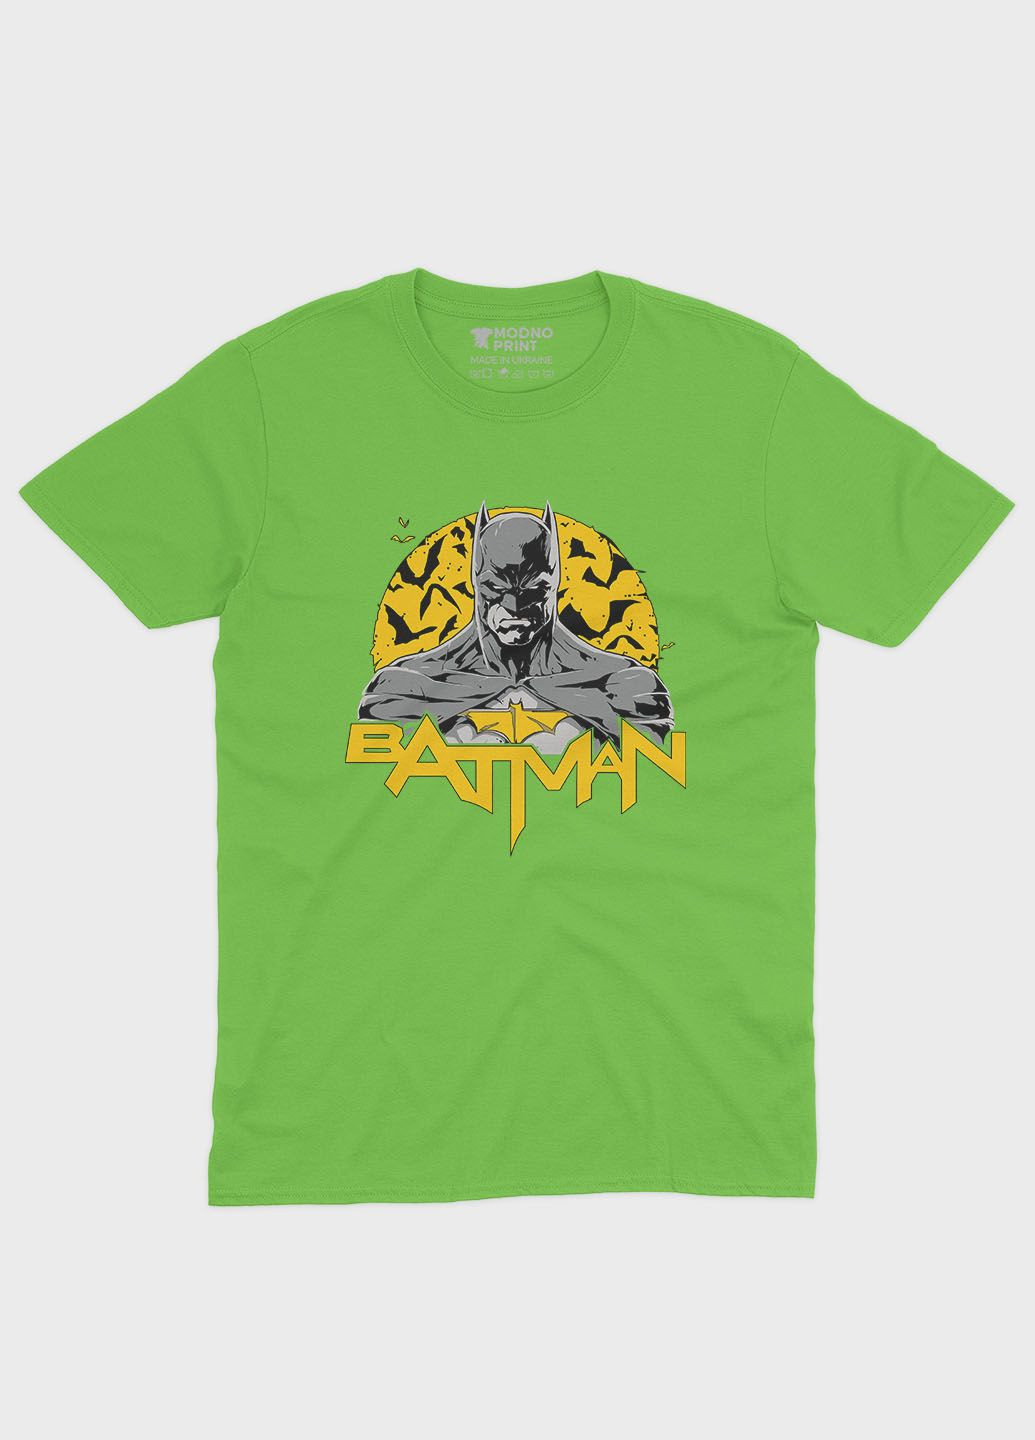 Салатовая демисезонная футболка для мальчика с принтом супергероя - бэтмен (ts001-1-kiw-006-003-011-b) Modno